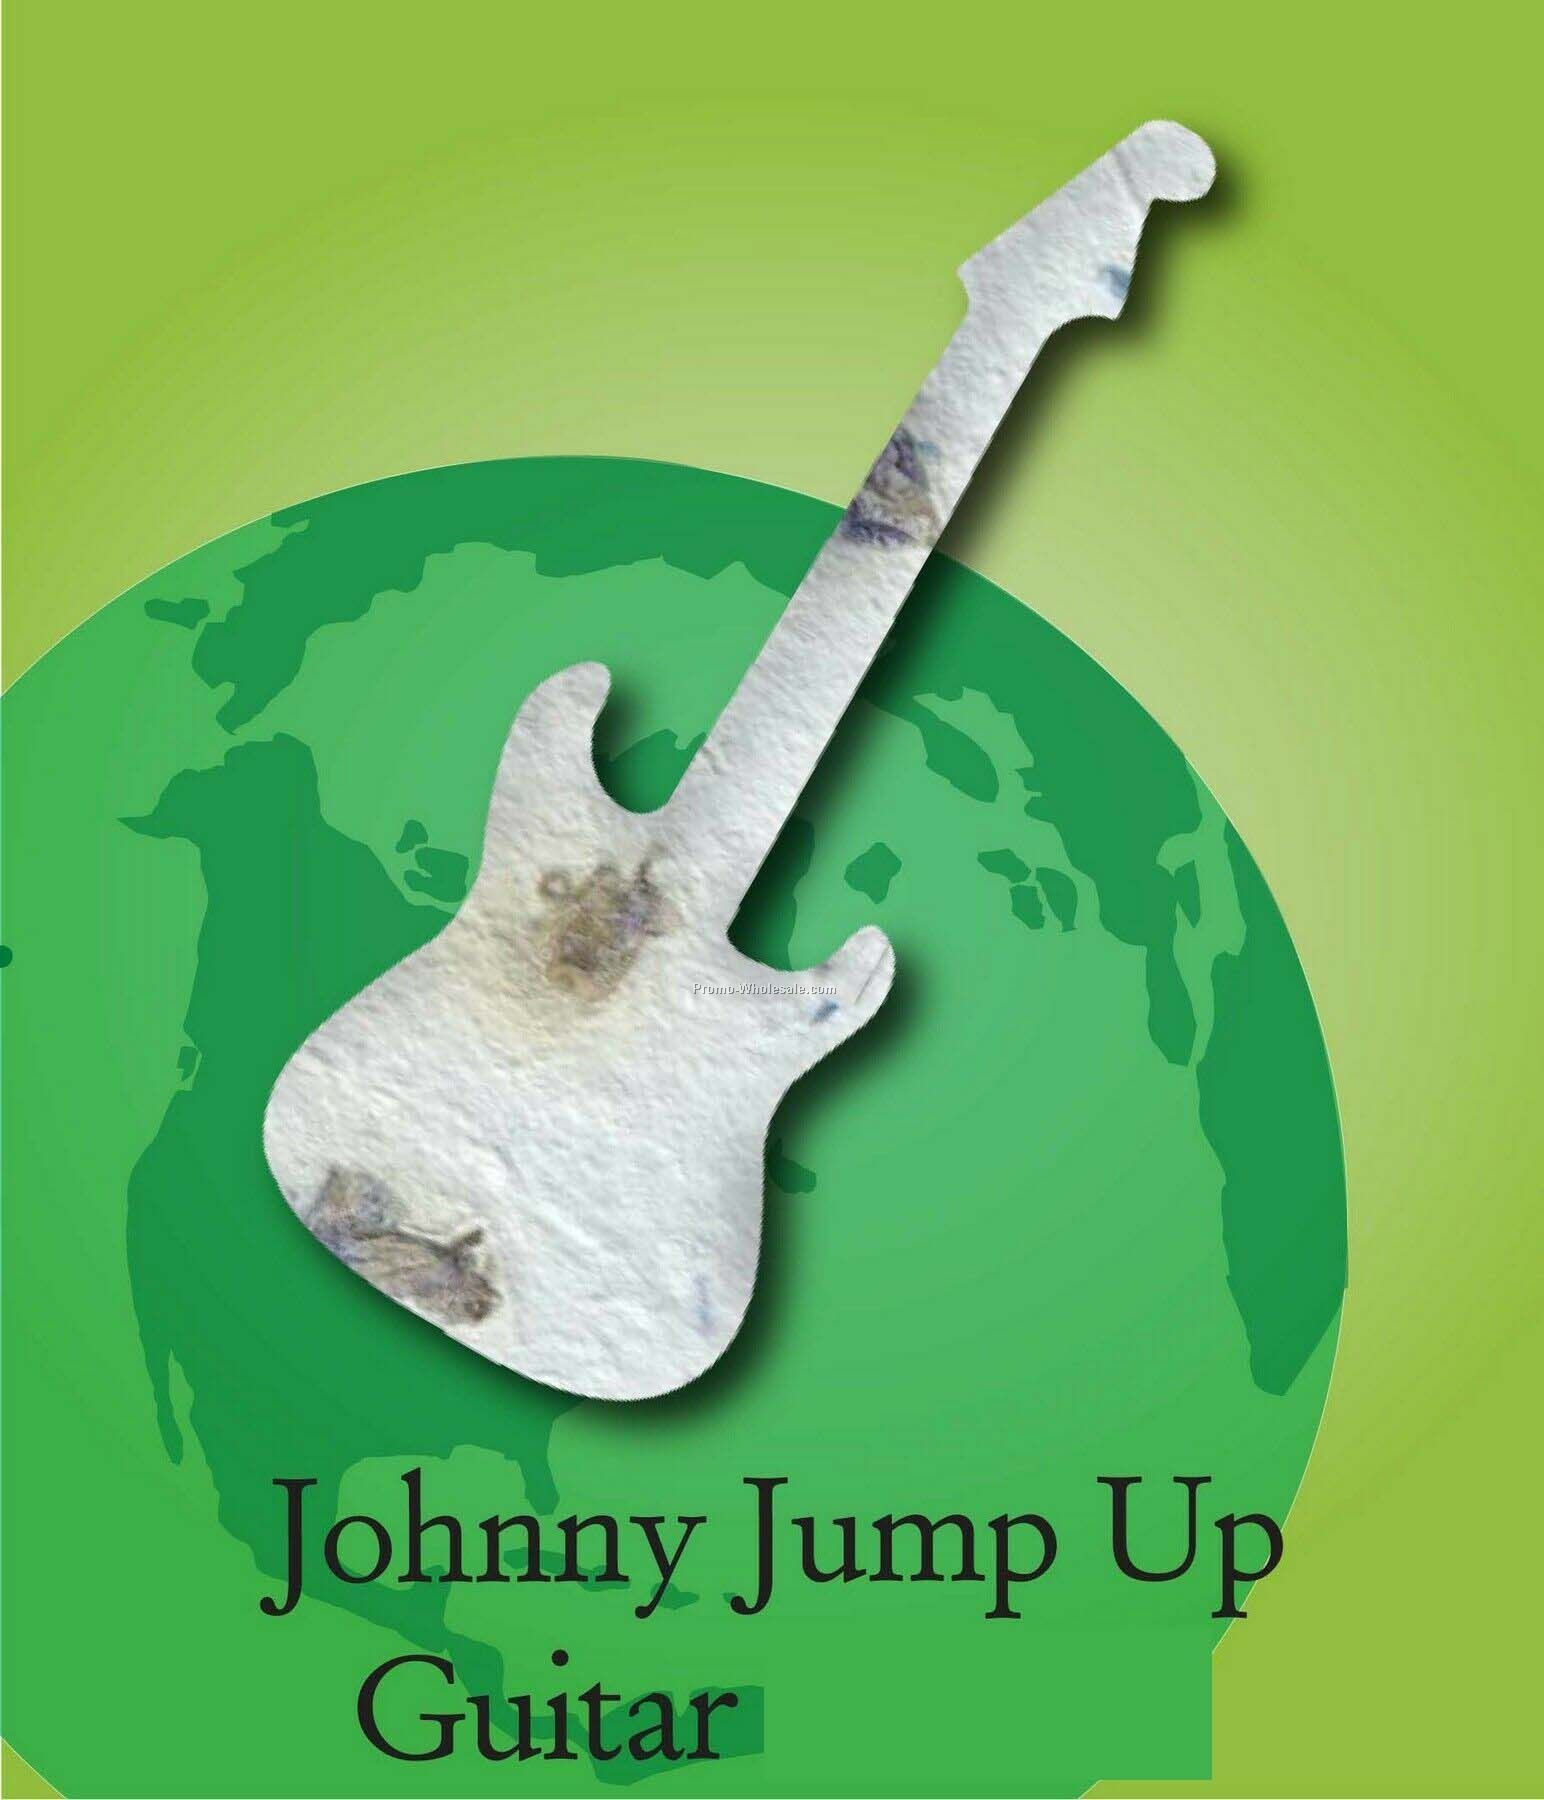 Johnny Jump Up Guitar Handmade Seed Plantable Mini